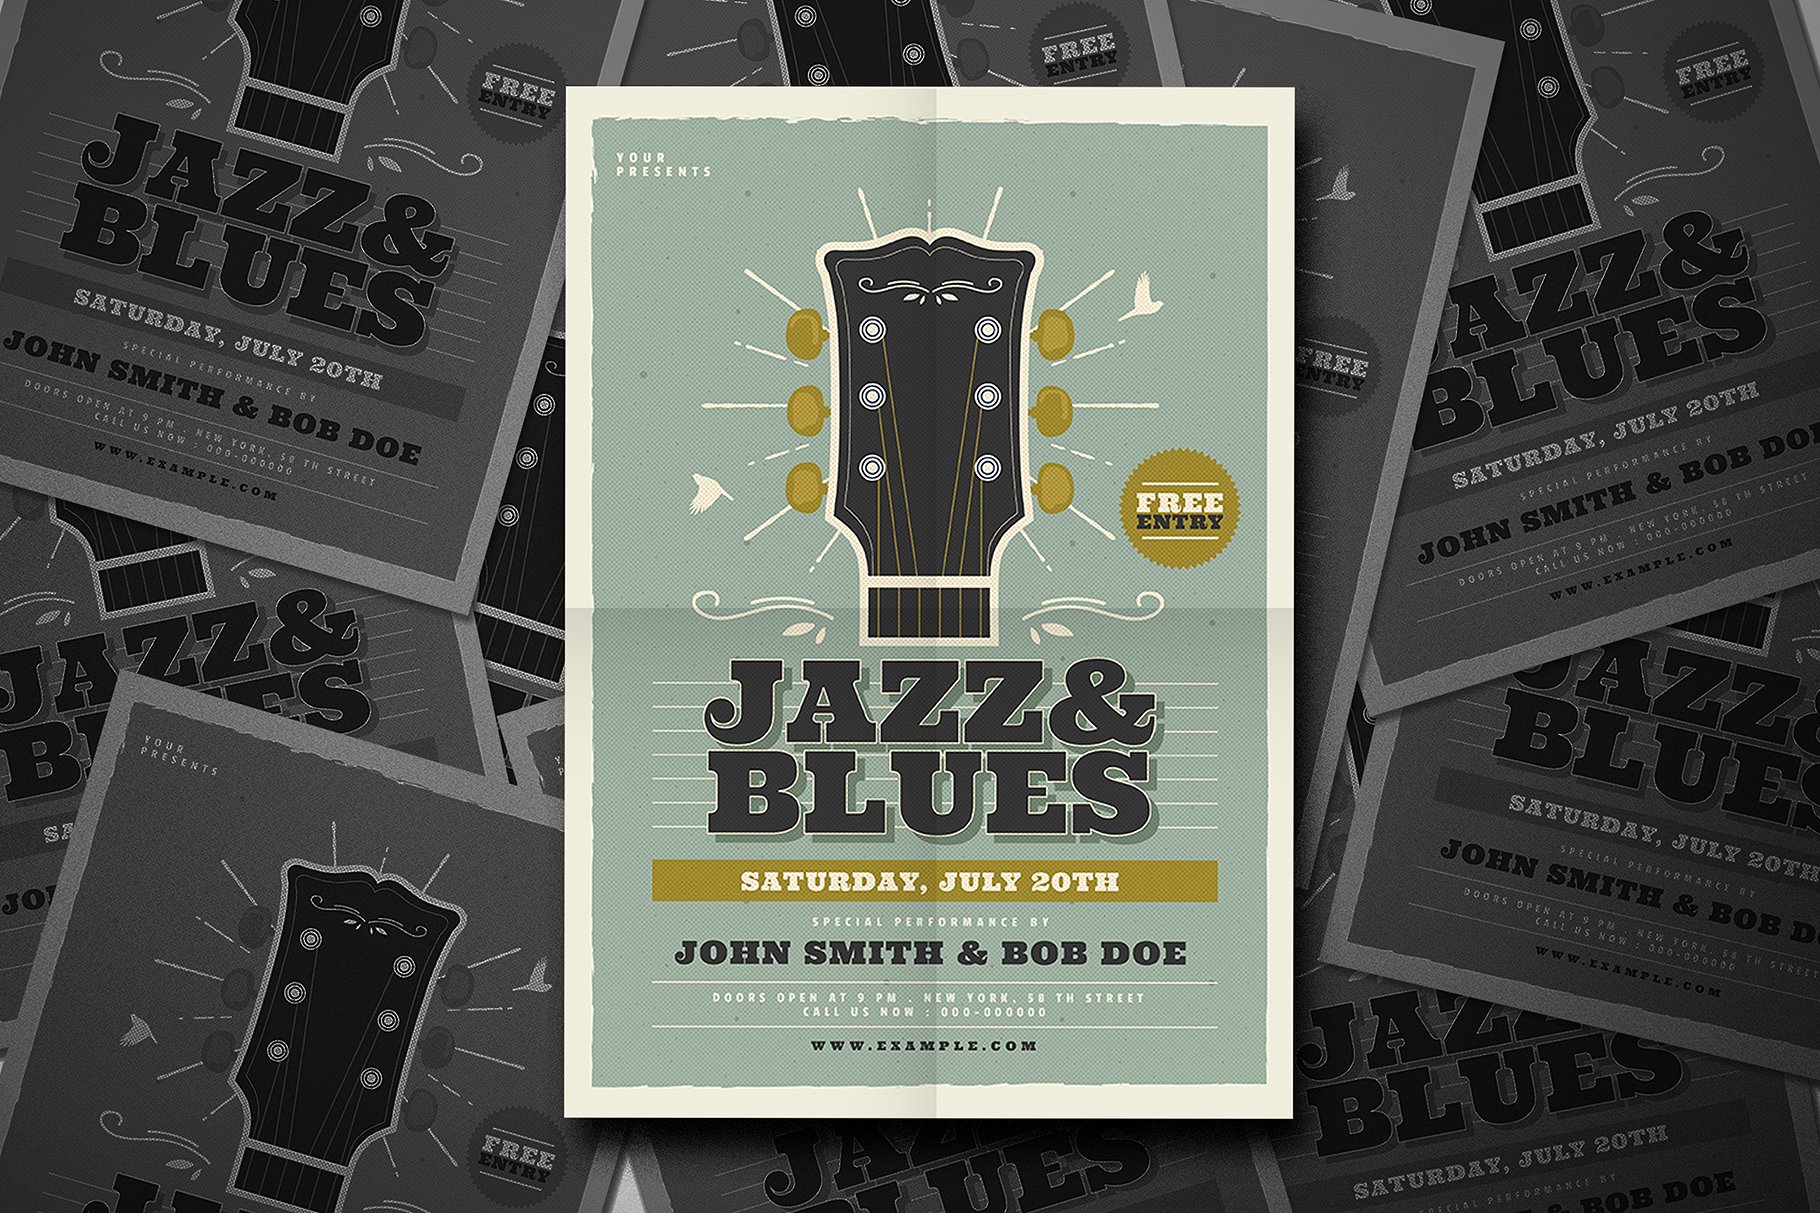 爵士蓝调音乐活动宣传单设计模板 Jazz & Blues Music Flyer插图(3)